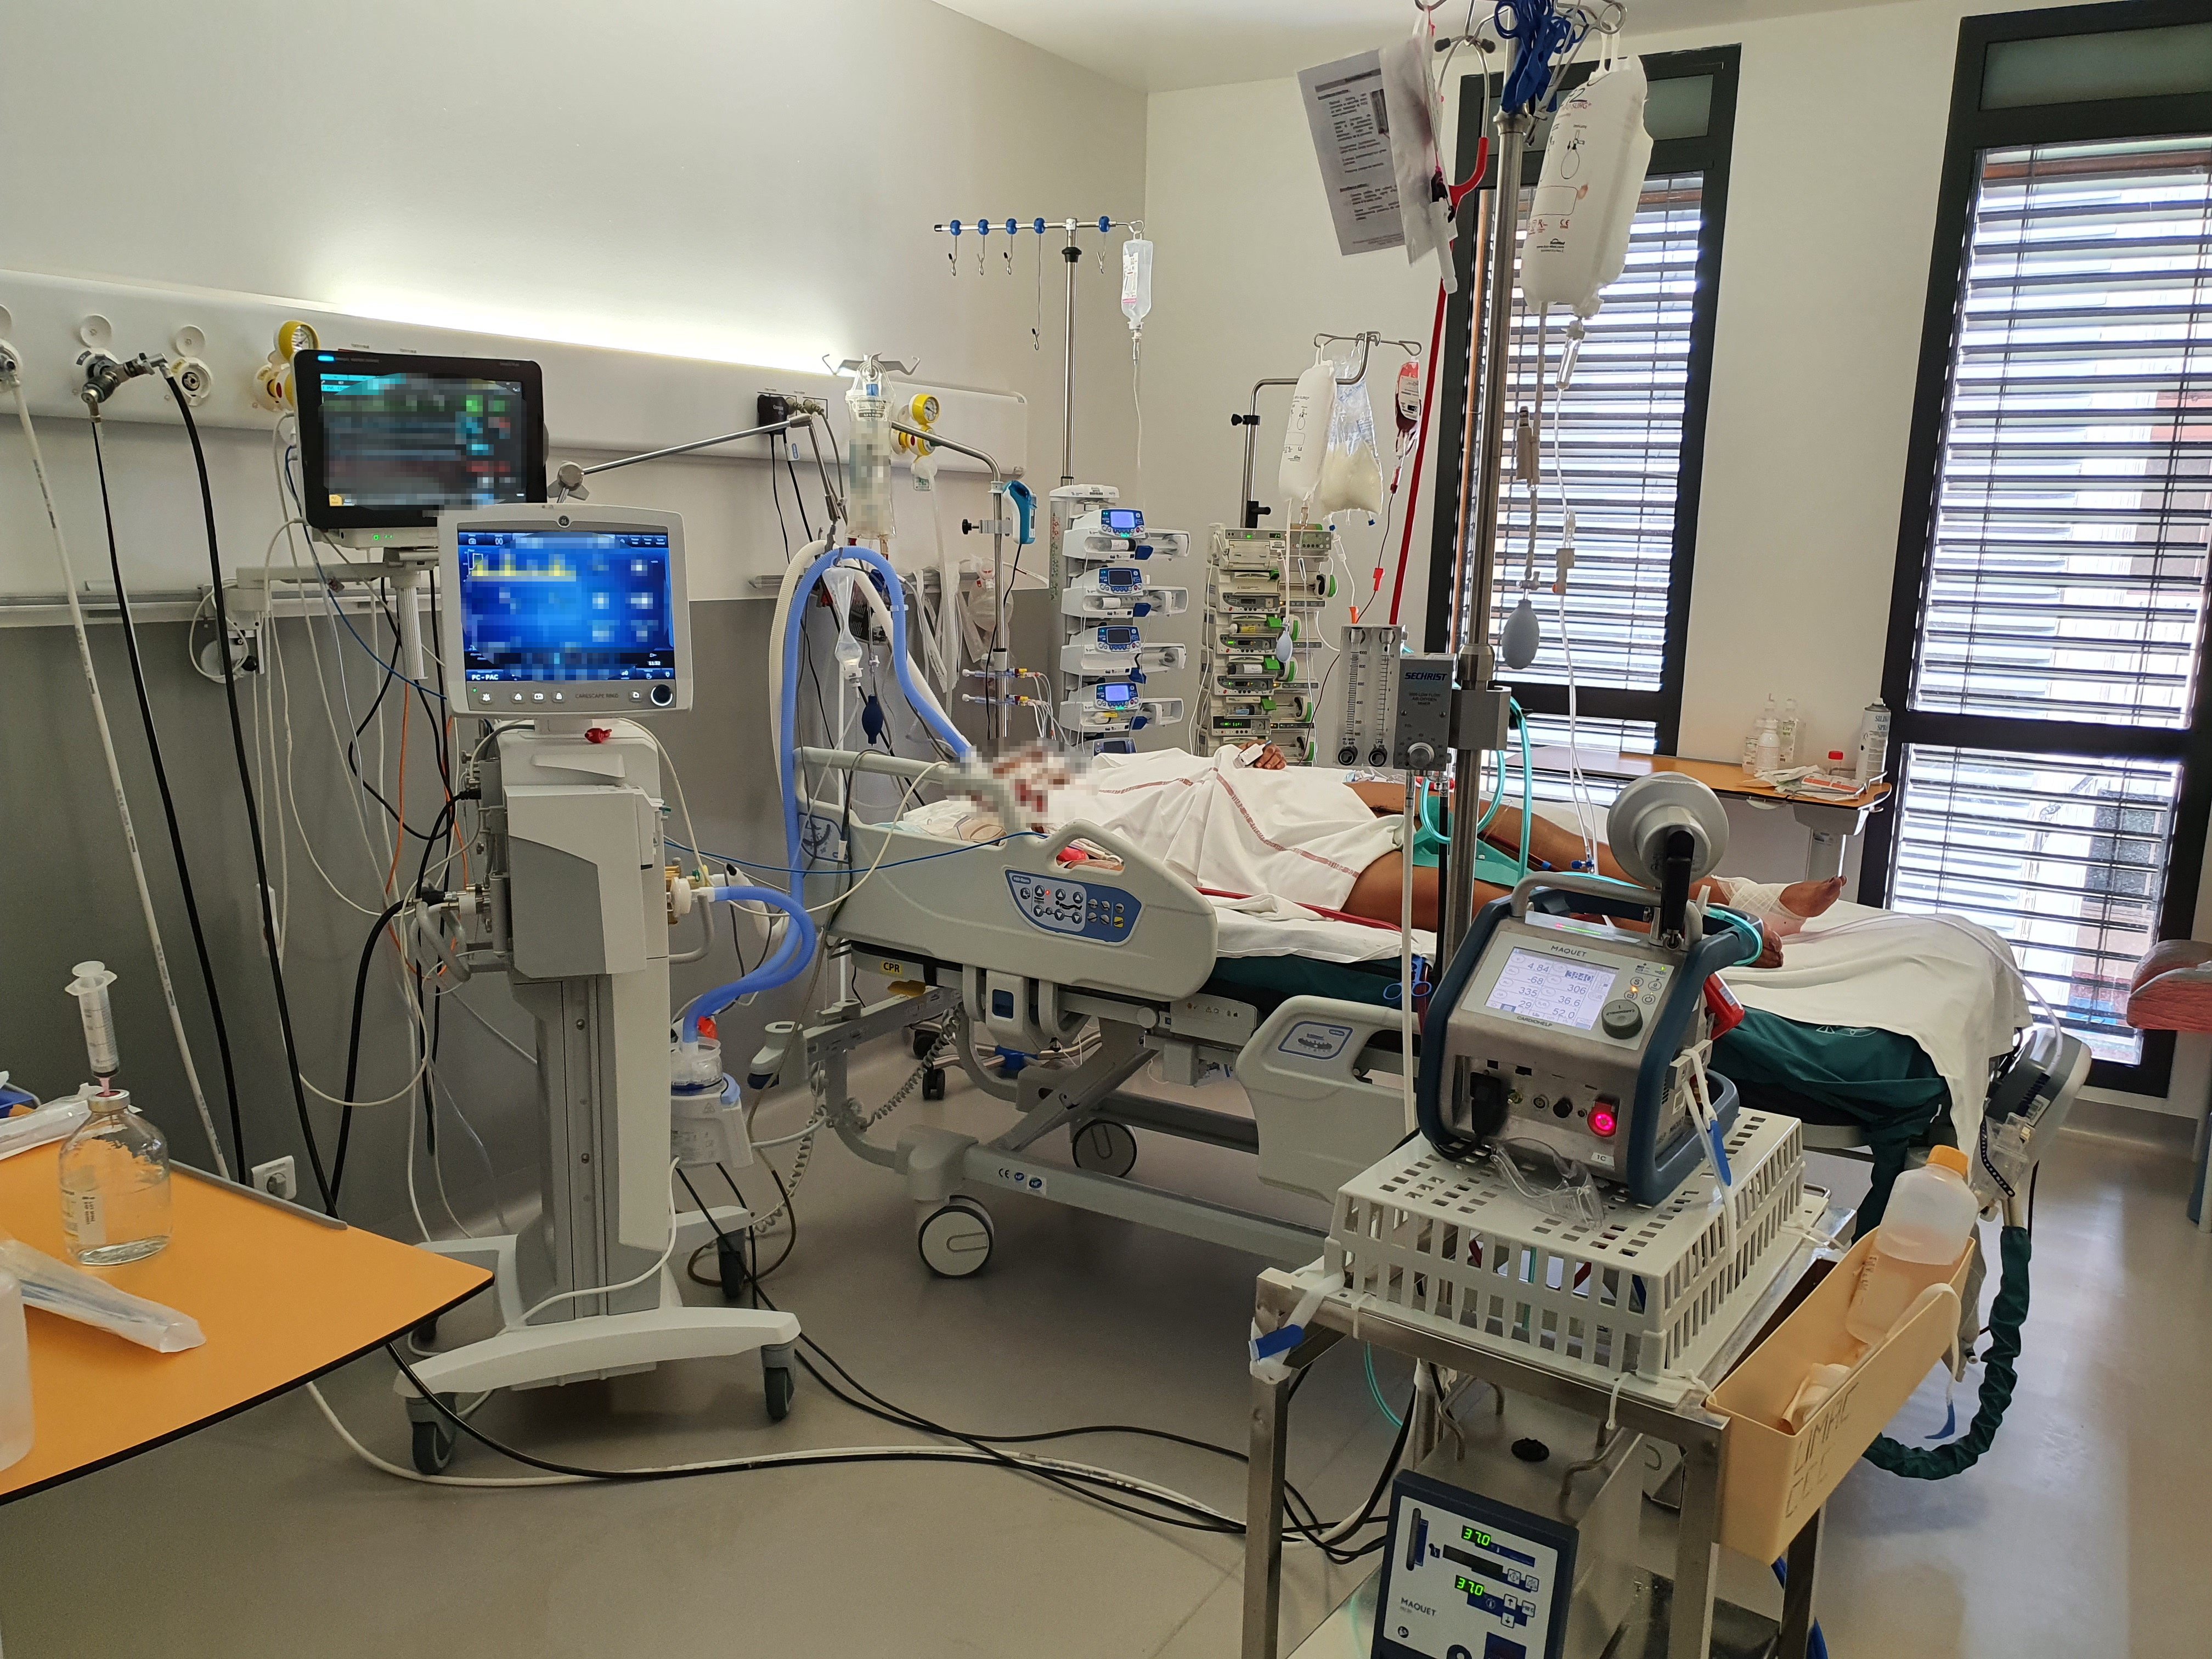     Covid-19 : 13 nouveaux décès en 2 jours en Martinique, l'hôpital est saturé

